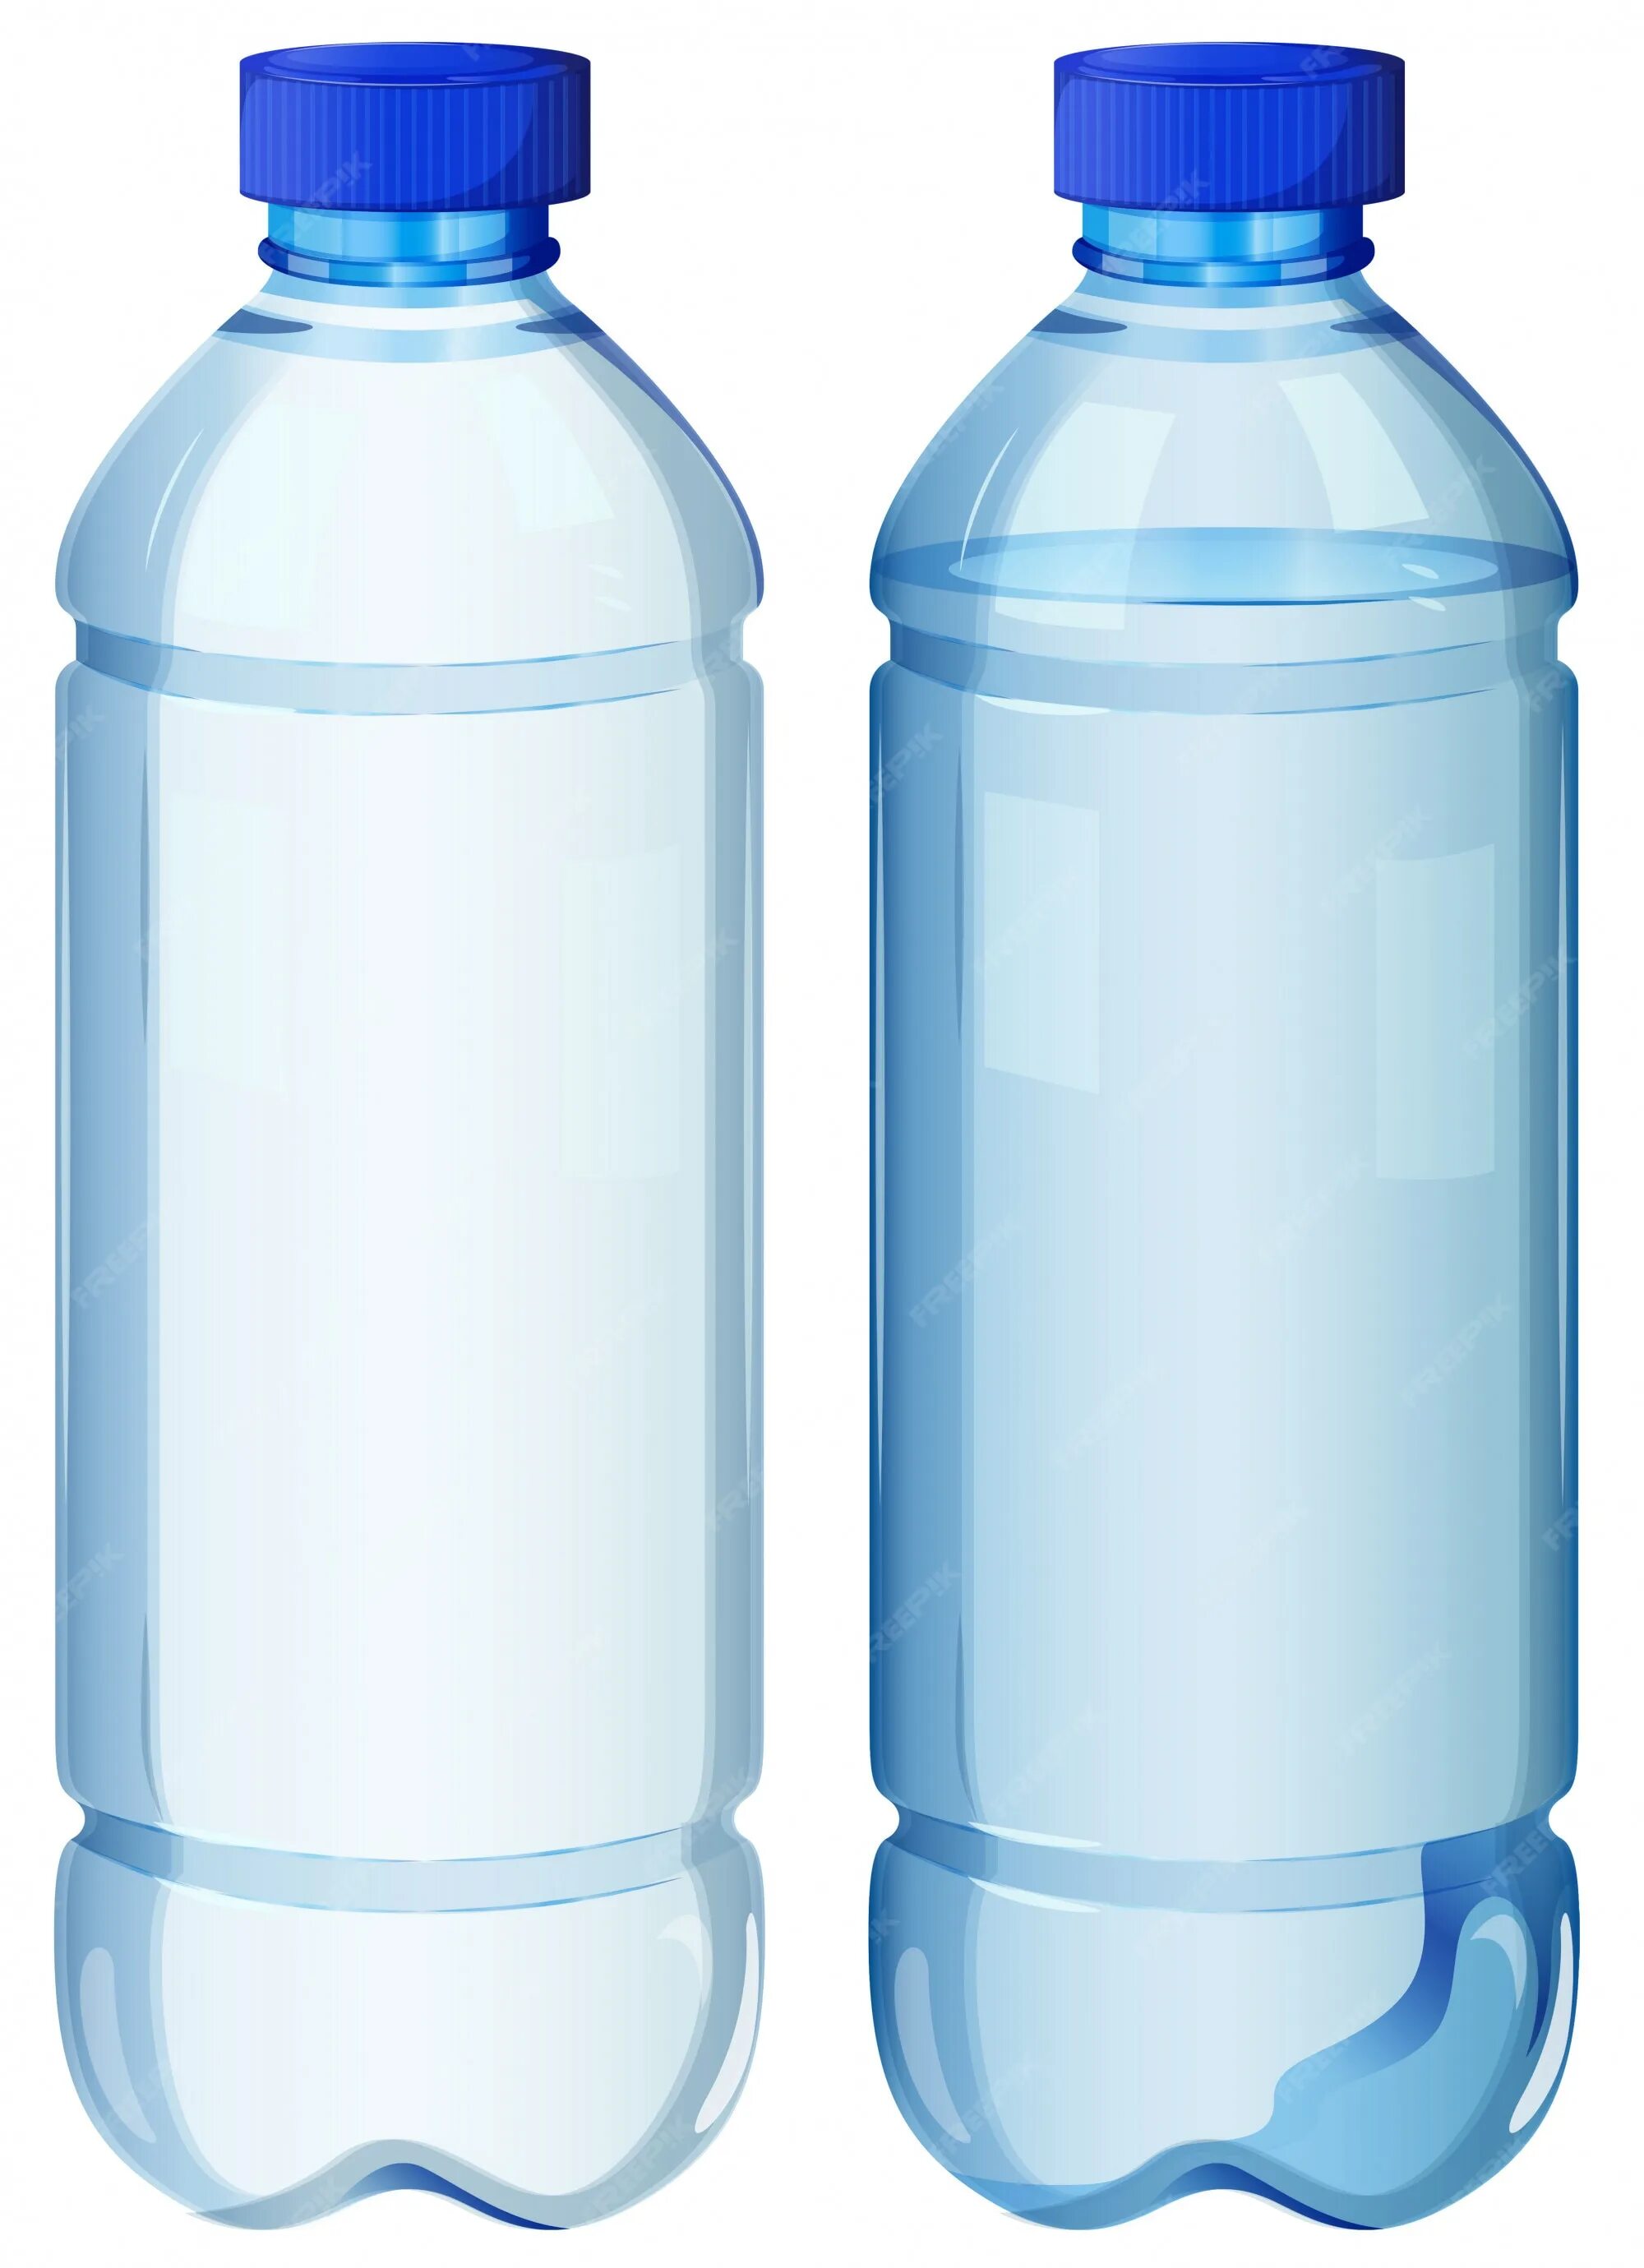 В бутылке закрытой крышкой находится вода. Бутылка для воды. Пластиковая бутылка на прозрачном фоне. Пластиковая бутылка без фона. Пластиковая бутылка вектор.